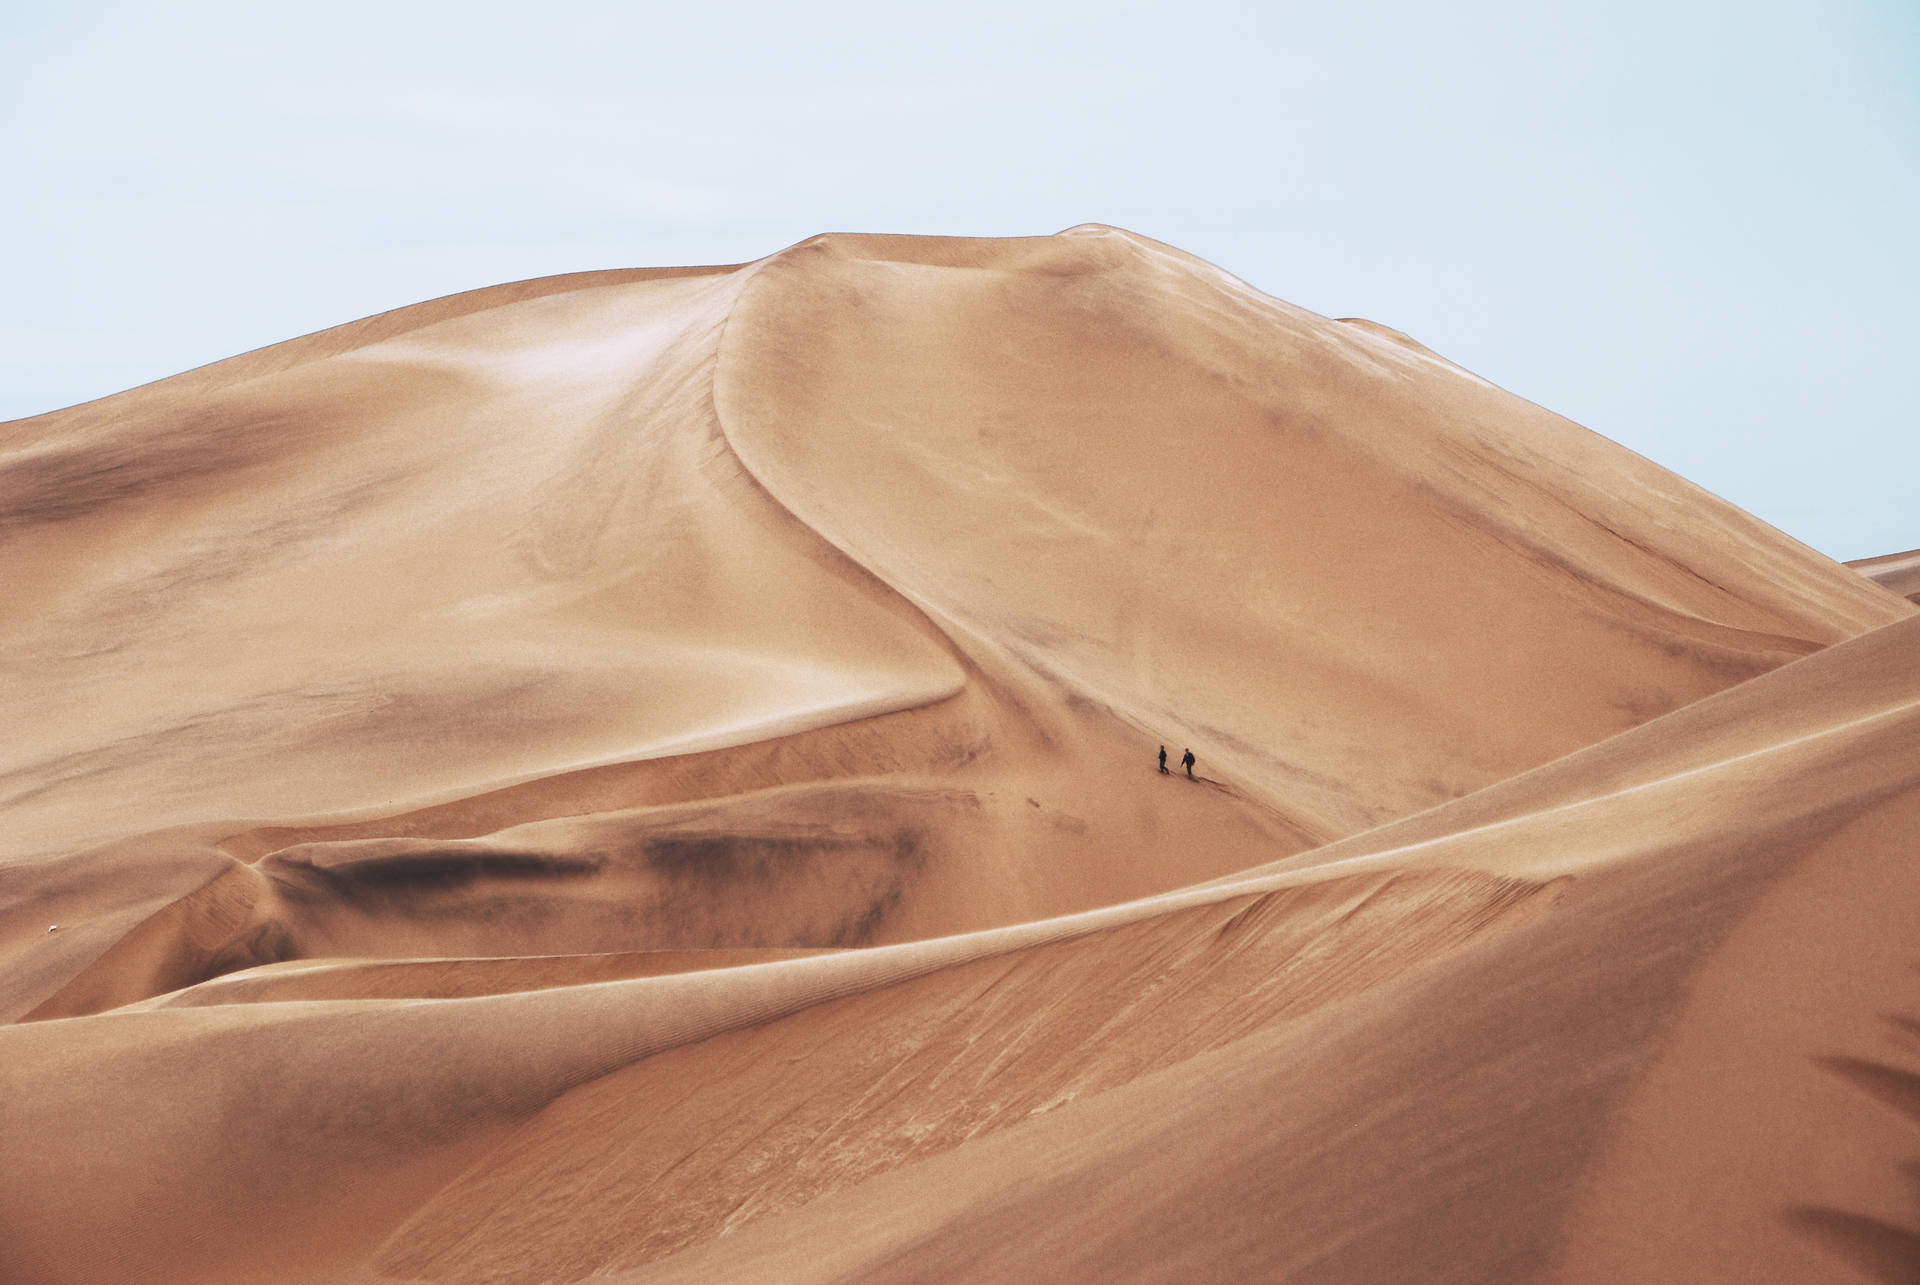 Enchanting Solitude In The Heart Of Desert Wallpaper